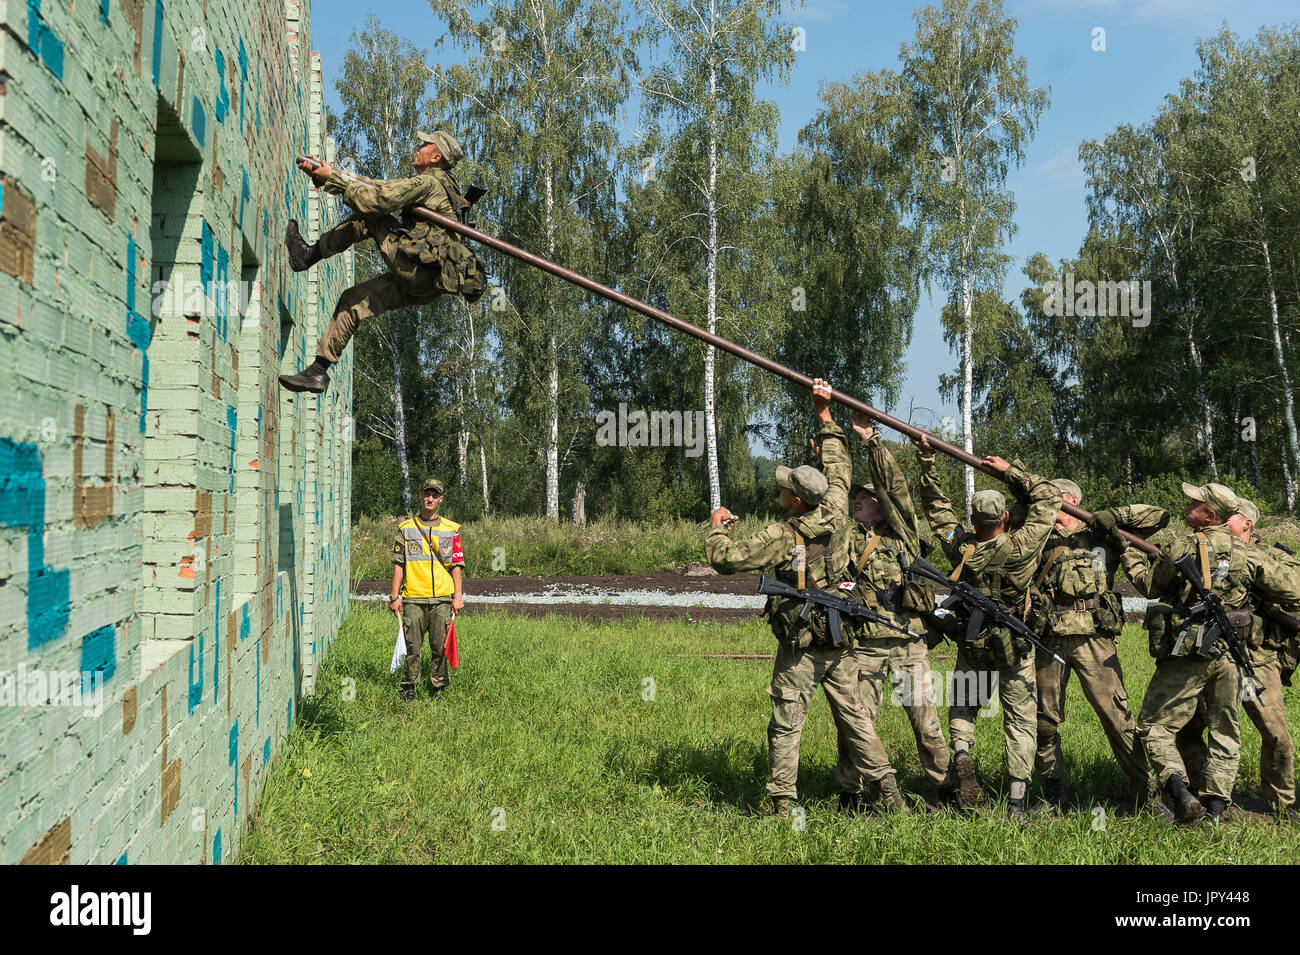 (170802) -- Novosibirsk (Russie), 3 août 2017 (Xinhua) -- des soldats russes escalader un mur au cours de l'Armée Internationale 2017 Jeux en région de Novossibirsk, Russie, le 2 août 2017. 'Armée du Scoutisme la concurrence des maîtres de l'International Jeux 2017 a débuté à l'École de commandement militaire supérieur de Novossibirsk le 30 juillet. (Xinhua/Evgeny Sinitsyn) Banque D'Images